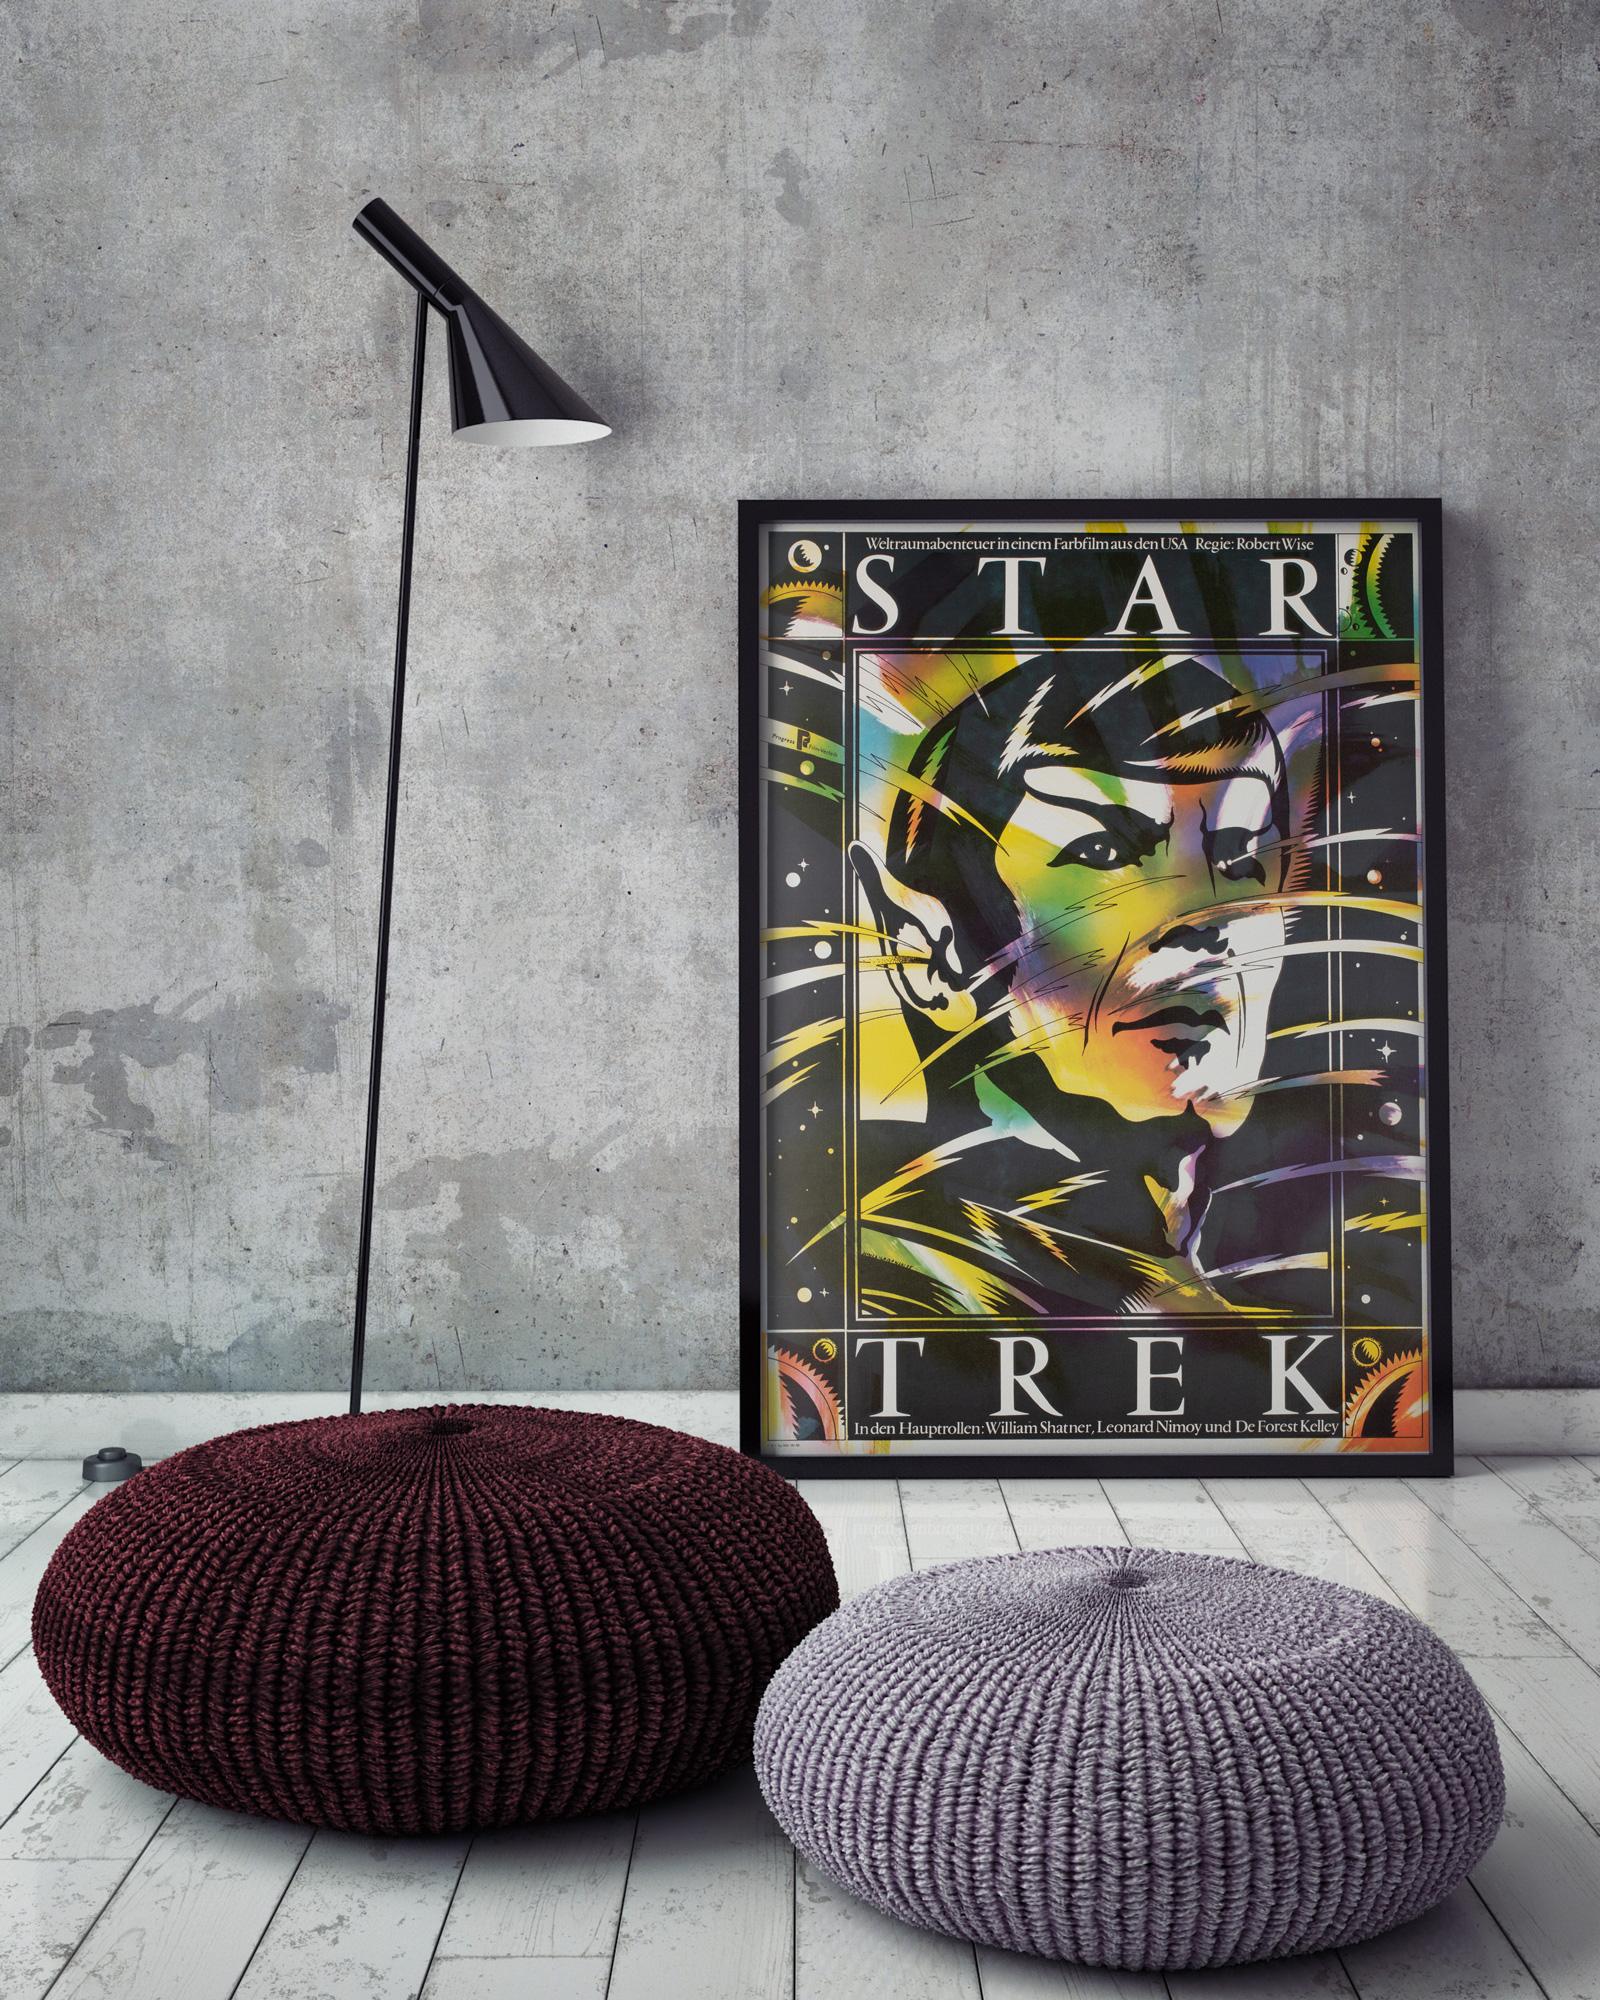 Star Trek Original, affiche de film est-allemand, 1985

Nous adorons le dessin de Spock d'Ilabowski sur l'affiche est-allemande de Star Trek. Un grand article rare, surtout dans cette grande taille et en état roulé ! 

Cette affiche de film